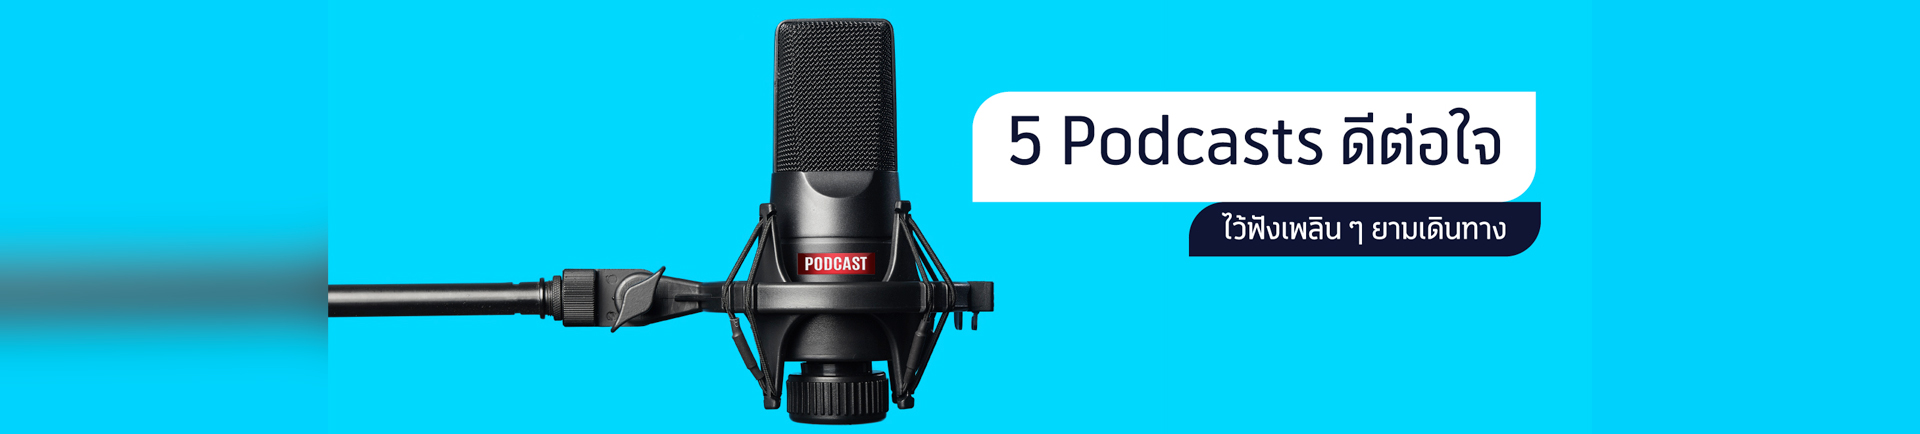 5 Podcasts ดีต่อใจ ไว้ฟังเพลิน ๆ ยามเดินทาง